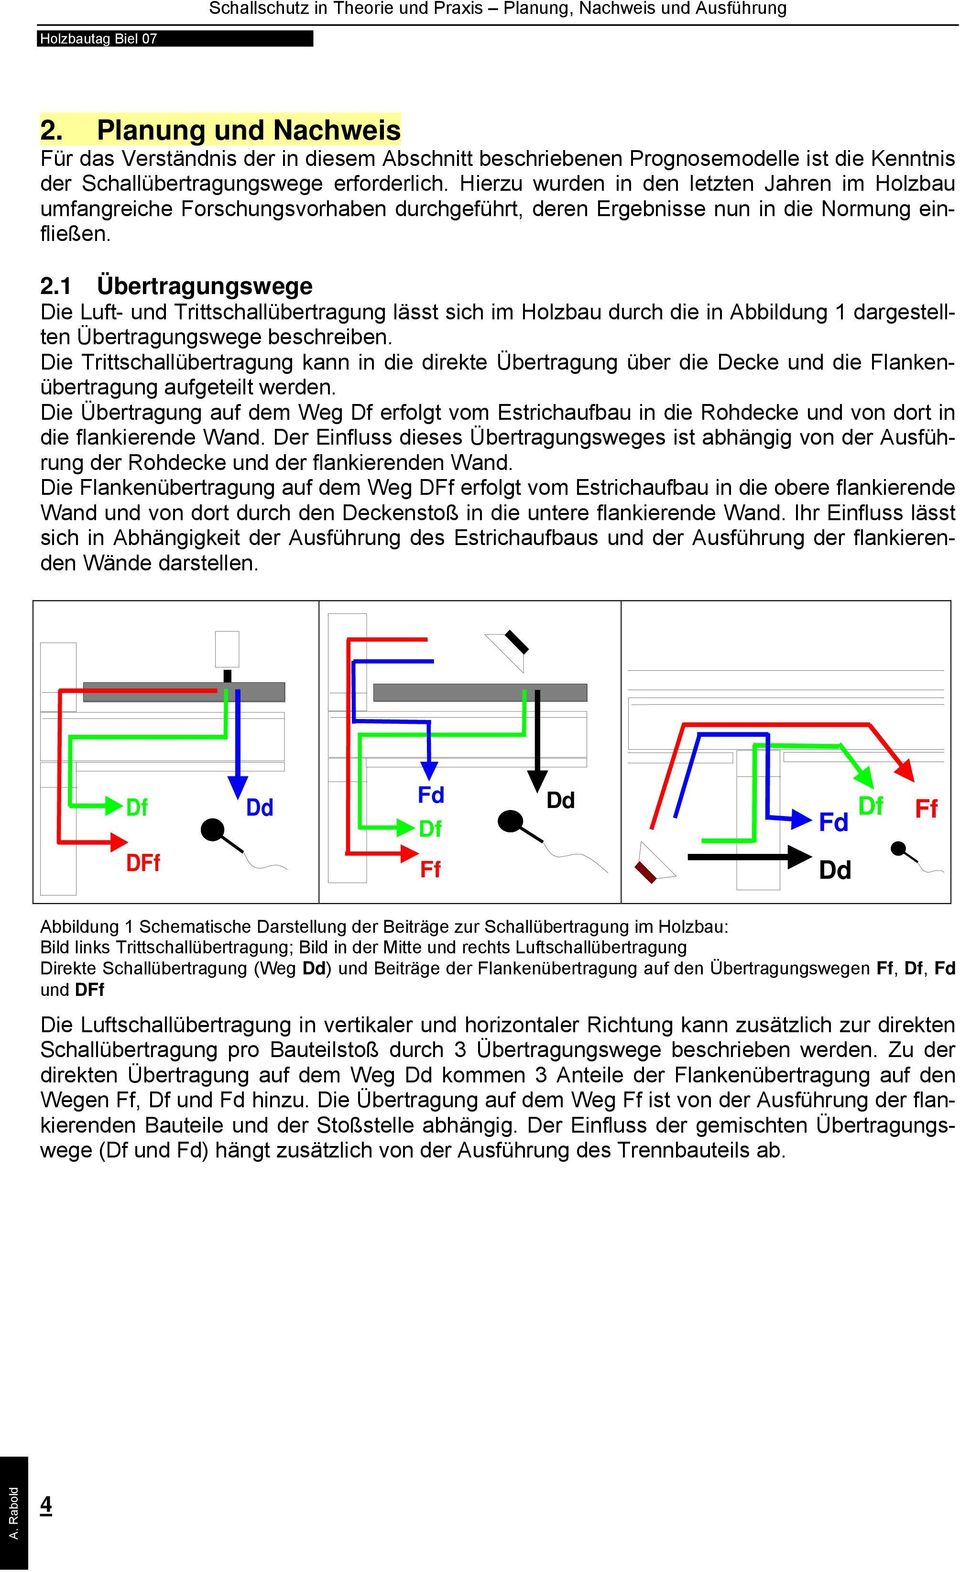 1 Übertragungswege Die Luft- und Trittschallübertragung lässt sich im Holzbau durch die in Abbildung 1 dargestellten Übertragungswege beschreiben.